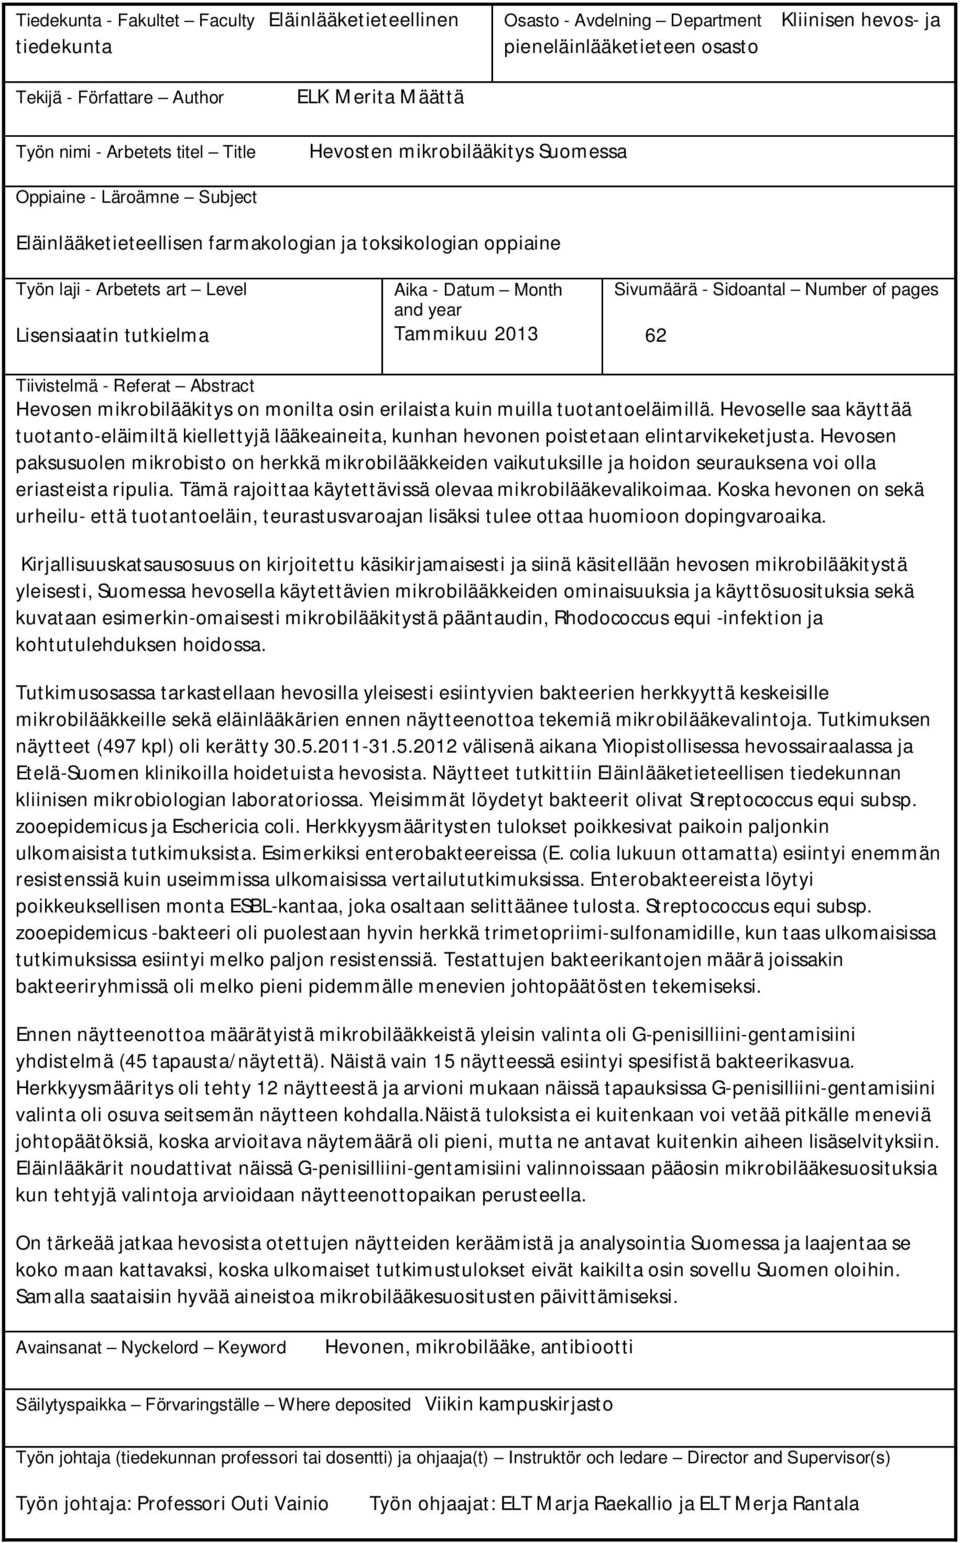 tutkielma Aika - Datum Month and year Tammikuu 2013 Sivumäärä - Sidoantal Number of pages 62 Tiivistelmä - Referat Abstract Hevosen mikrobilääkitys on monilta osin erilaista kuin muilla